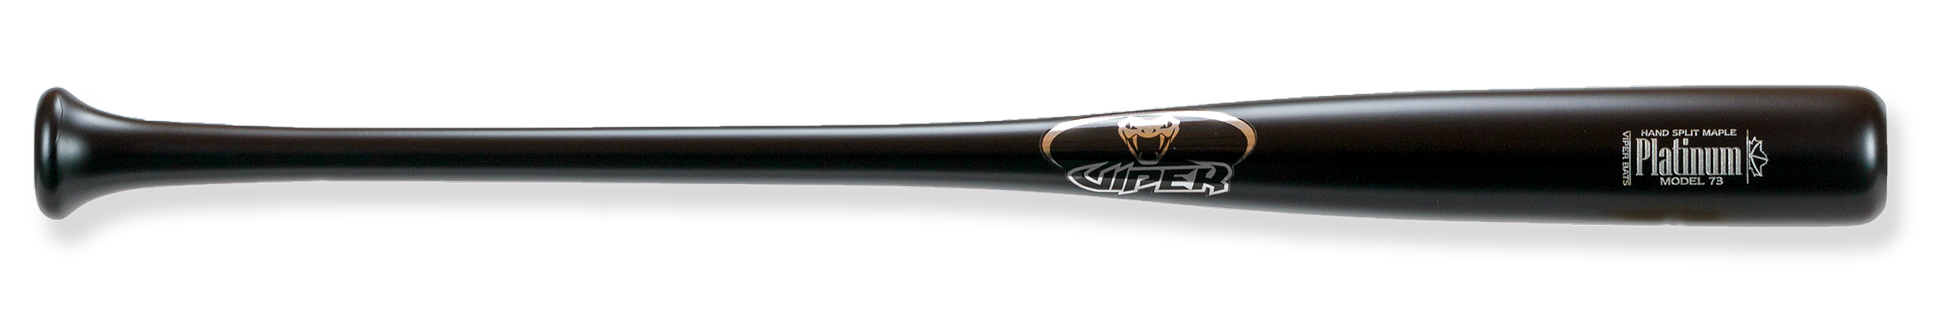 platinum 73 wood bat